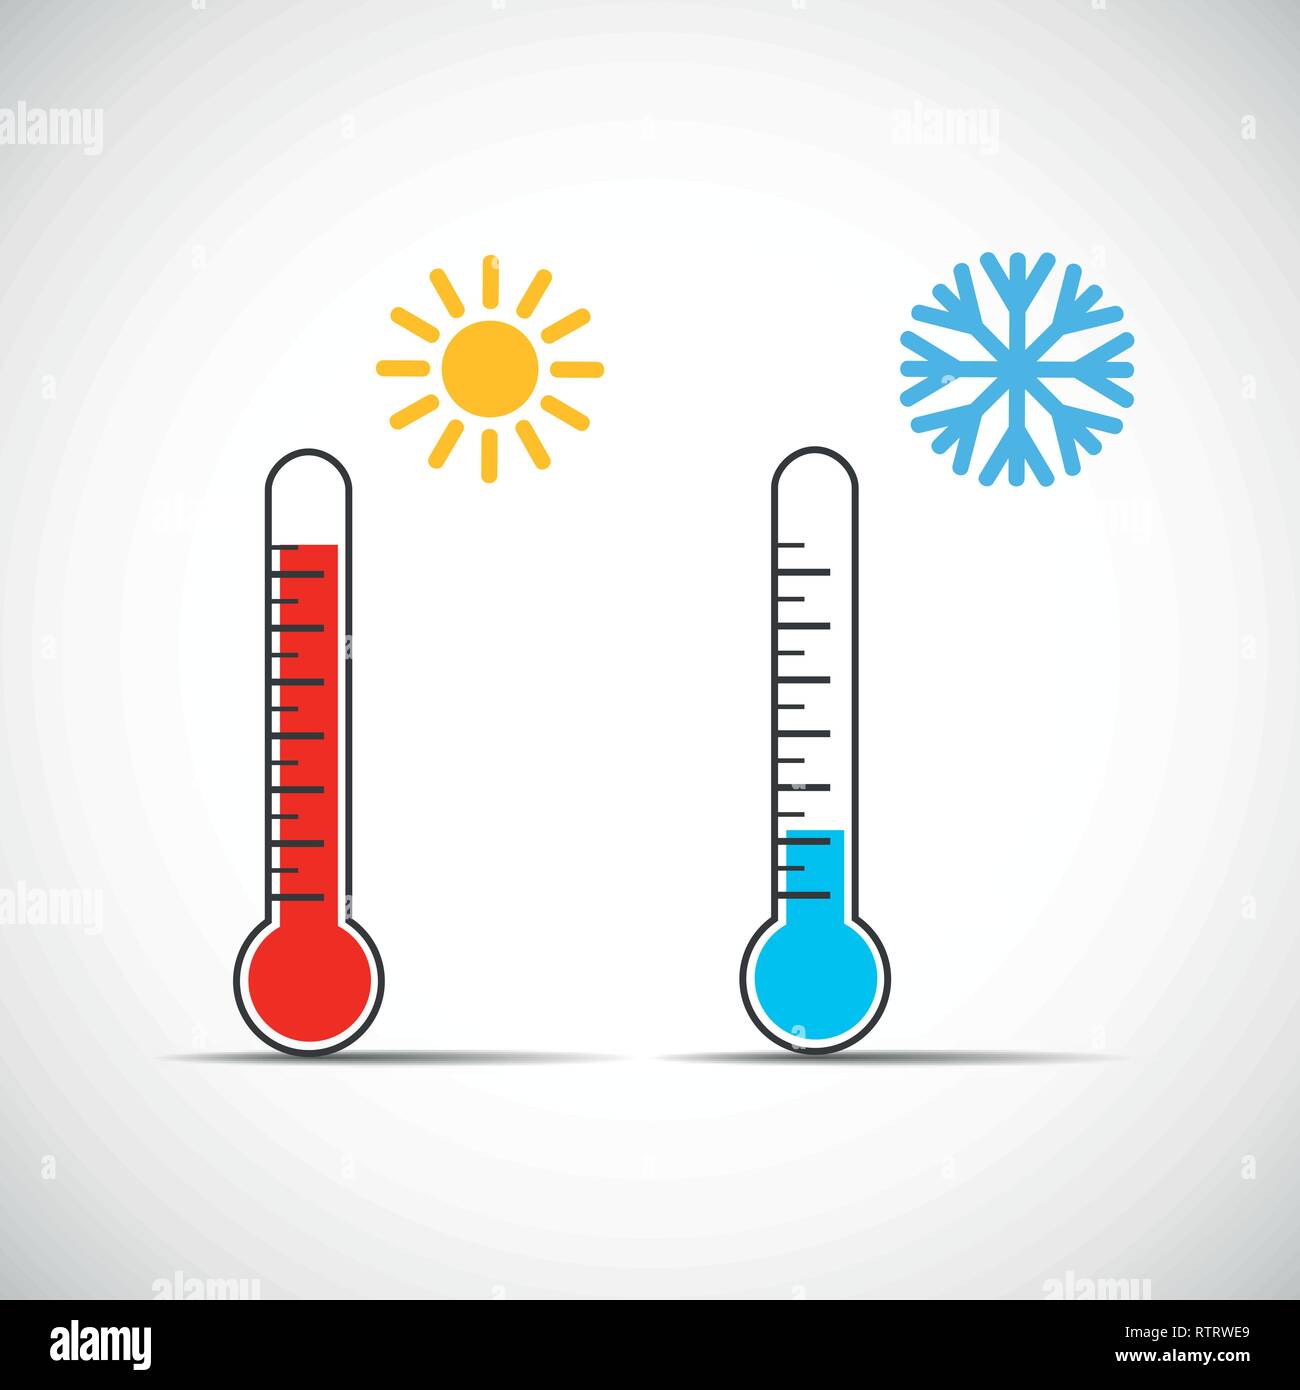 Hitze thermometer Symbol heiß kalt Wetter Vektor-illustration EPS 10. Stock Vektor